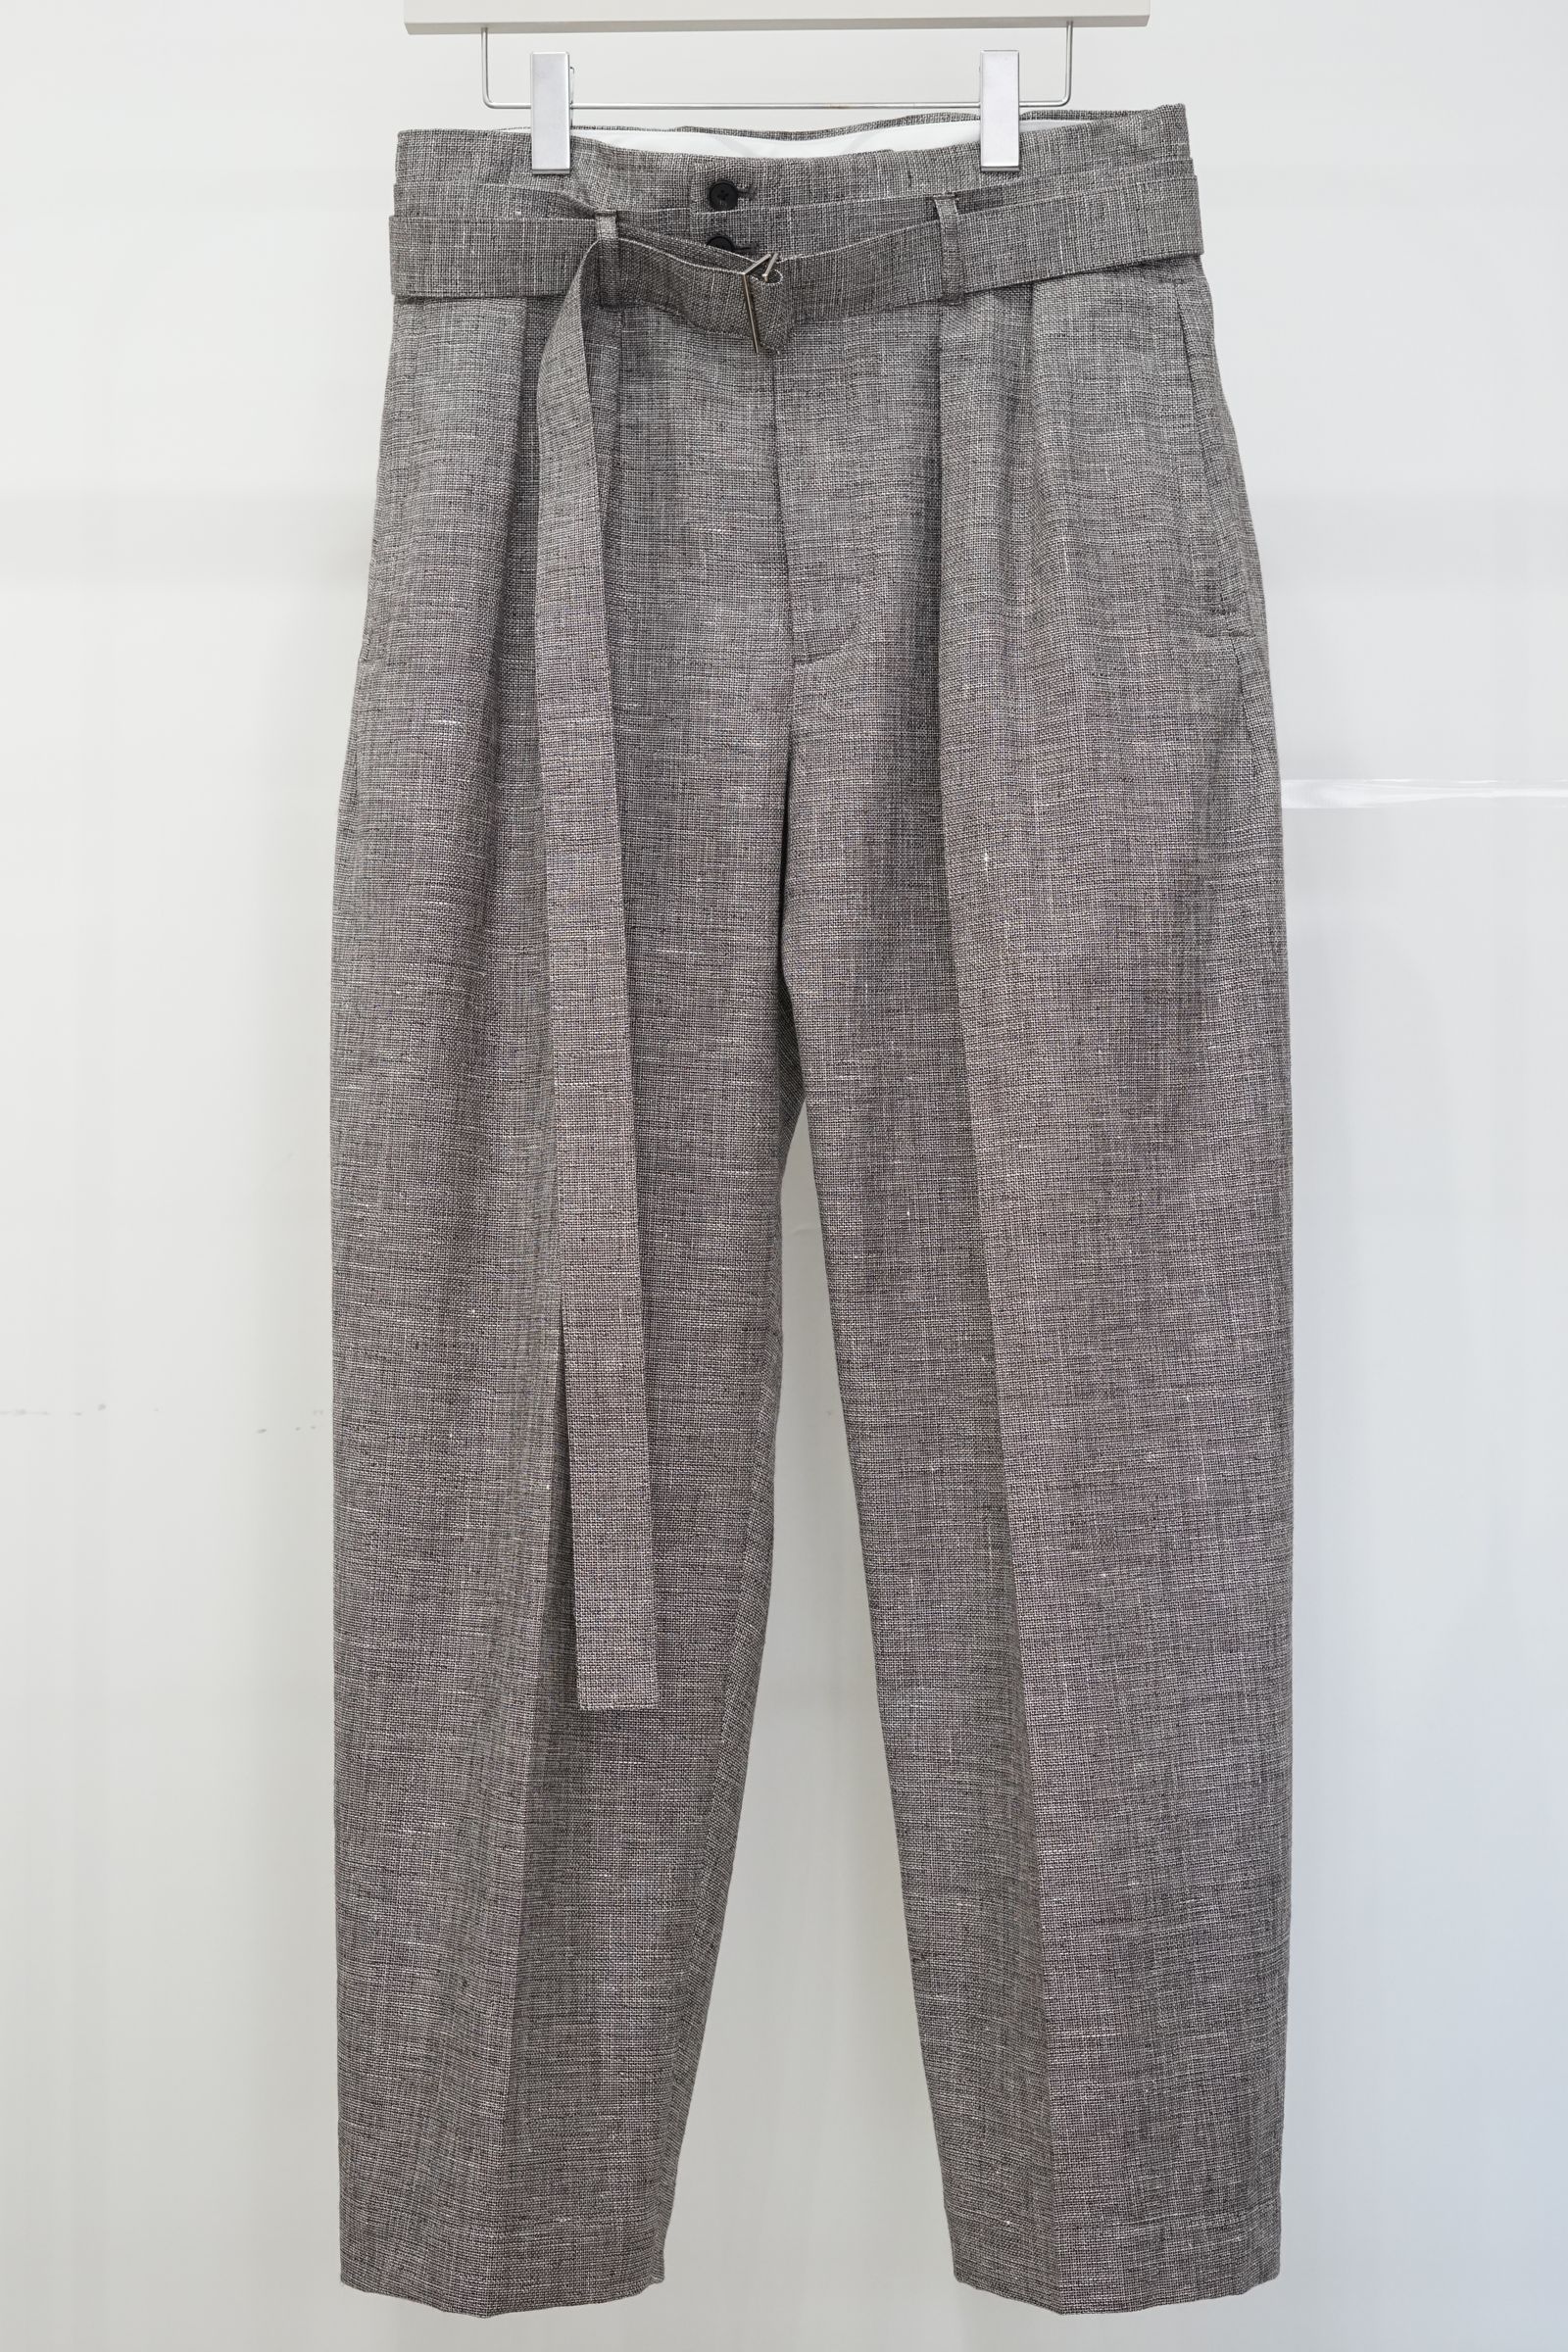 SEEALL - Manchester pants-brown mix-23ss men | asterisk